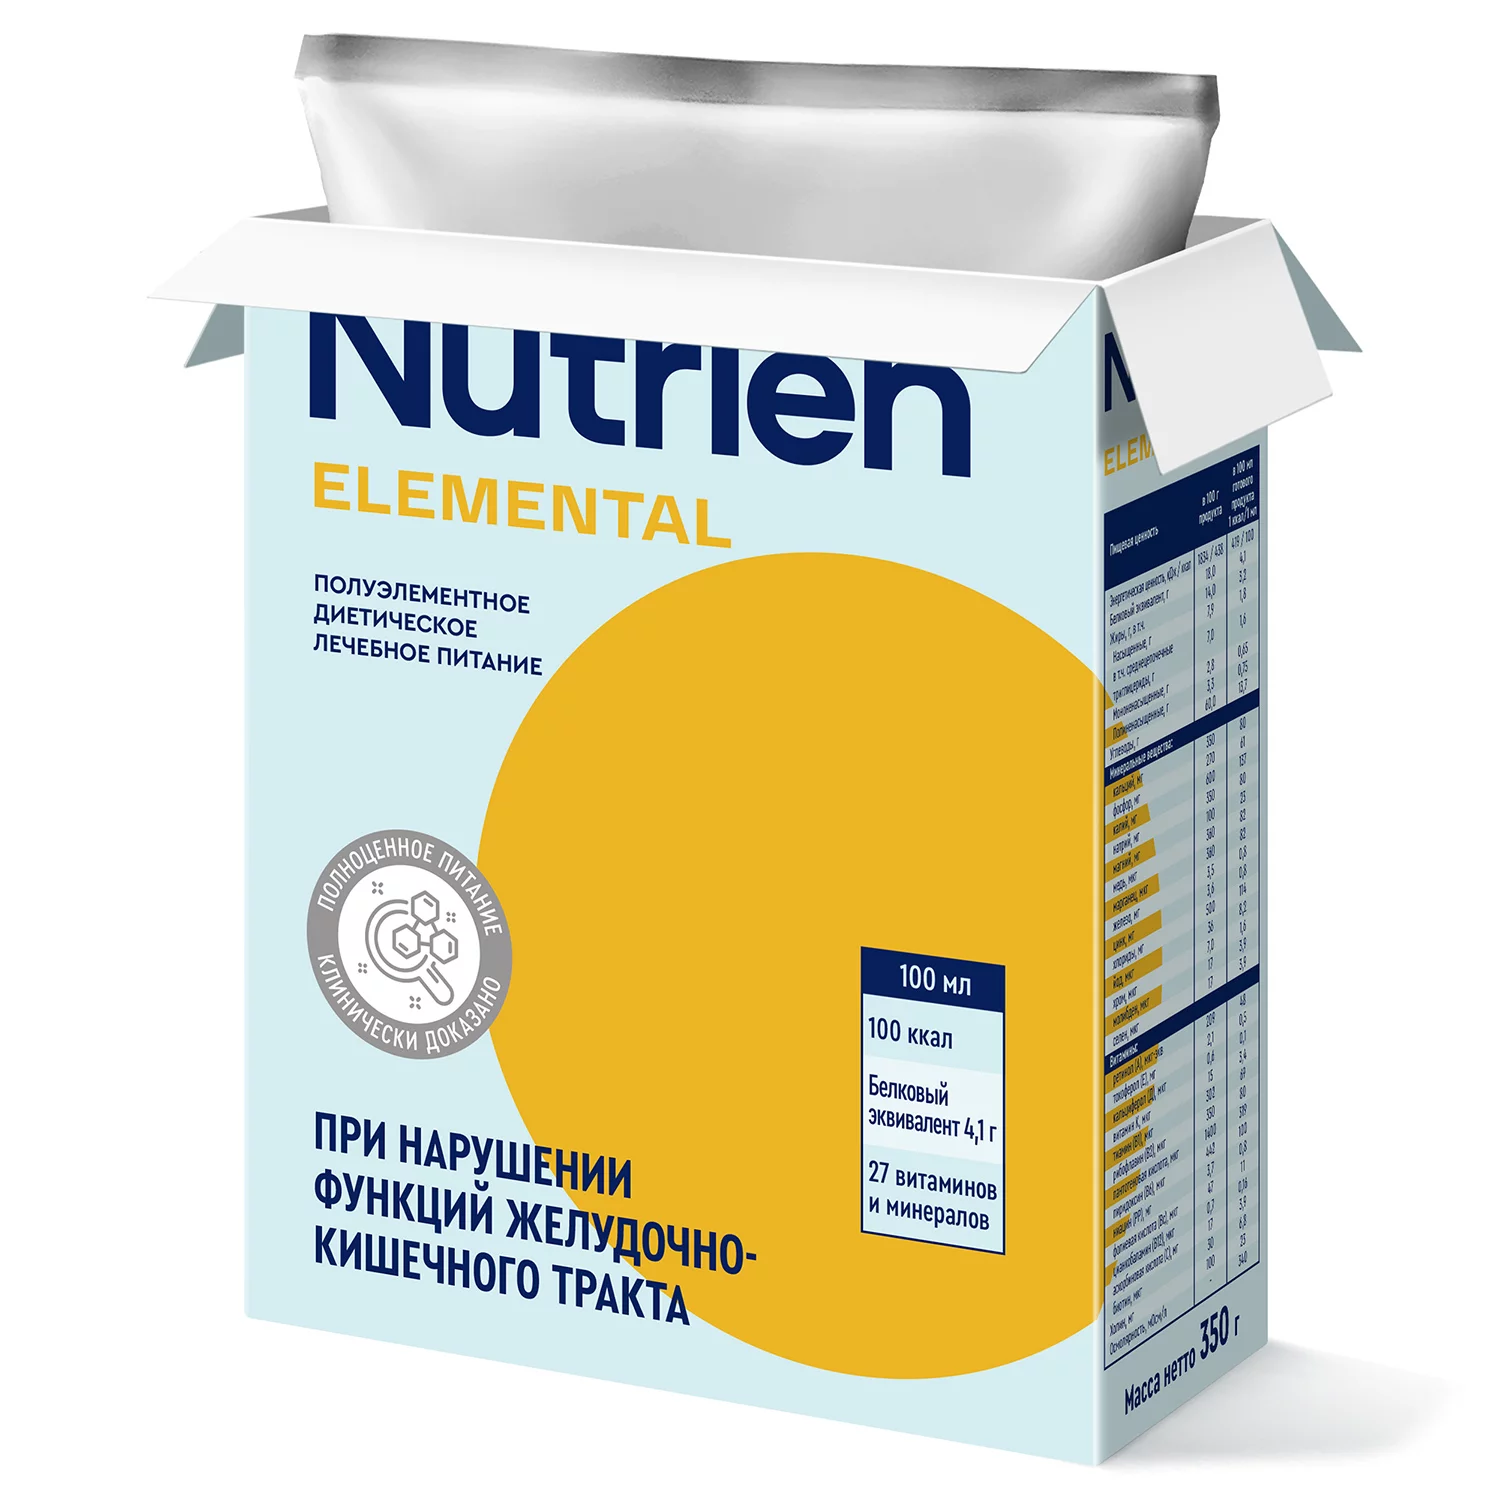 Nutrien Elemental - 2